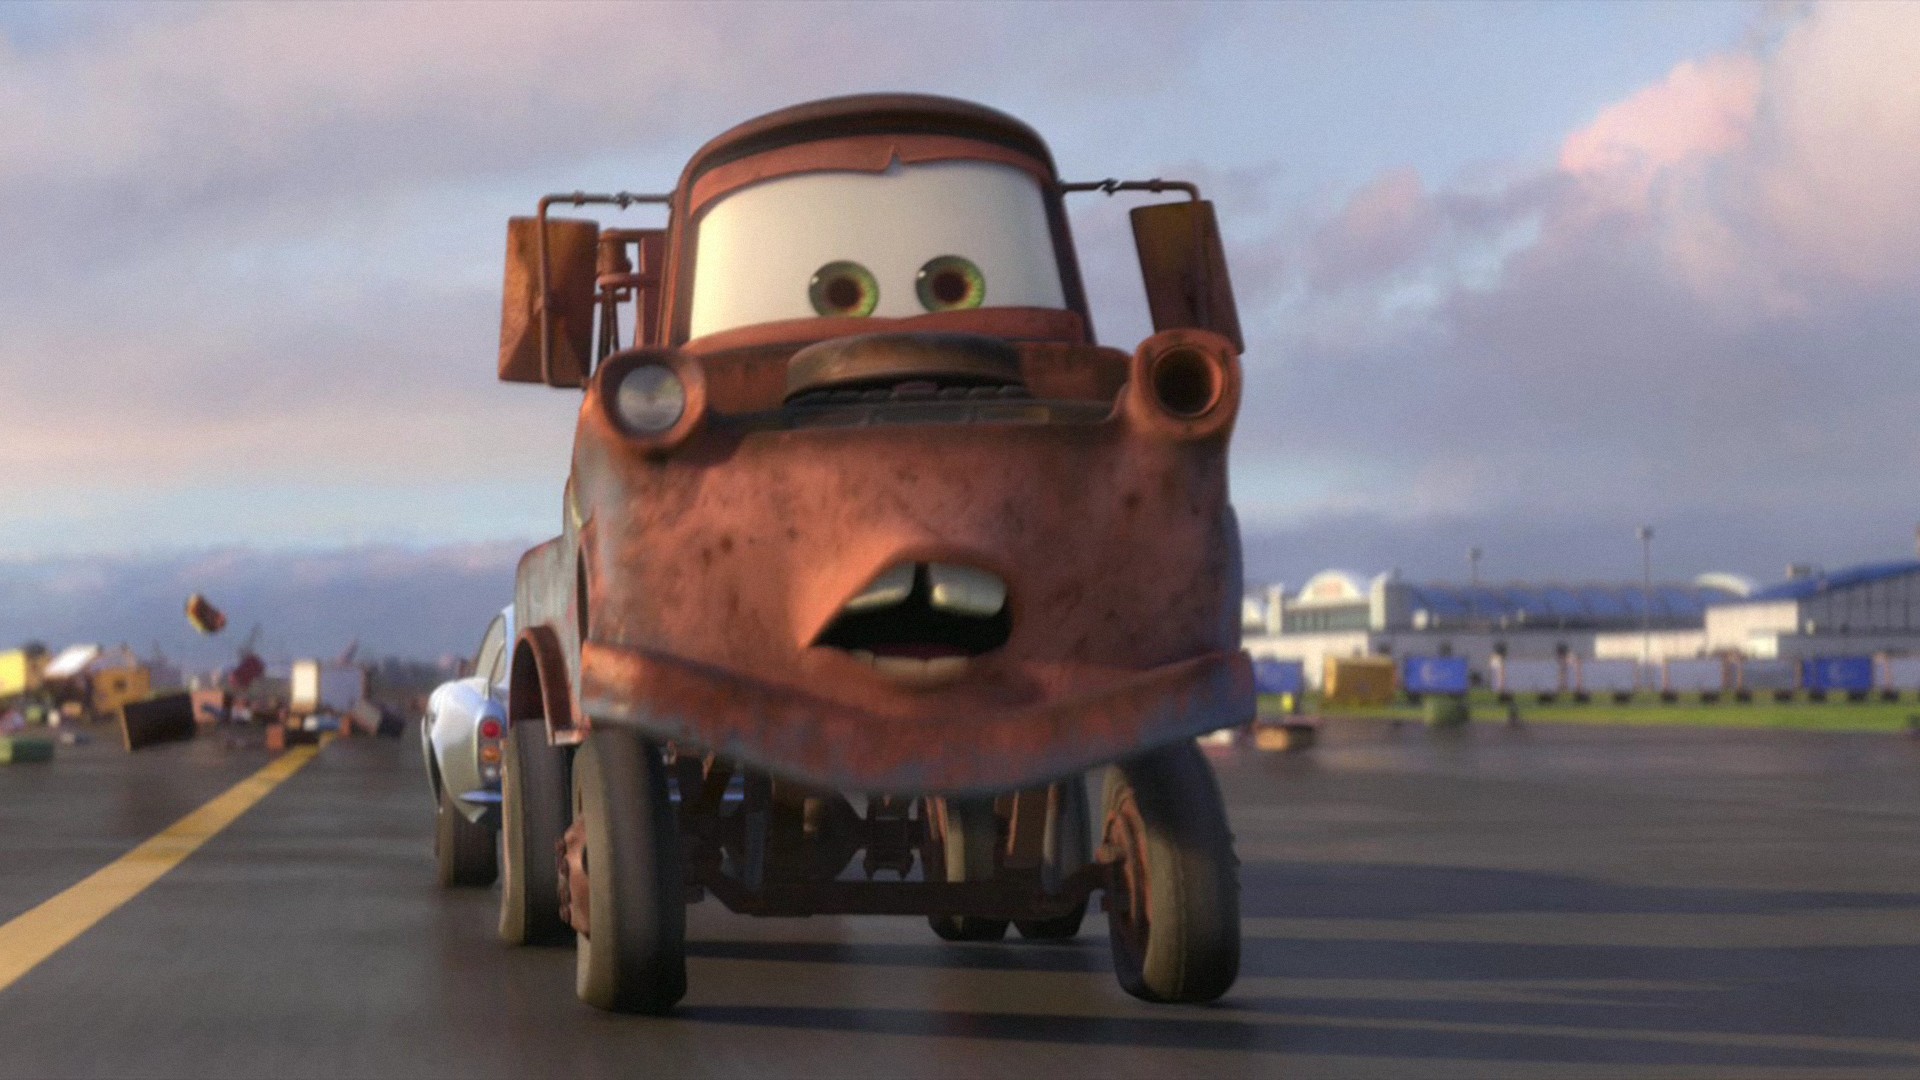 мультфильмы, Pixar, Disney Company, Cars 2 - обои на рабочий стол.